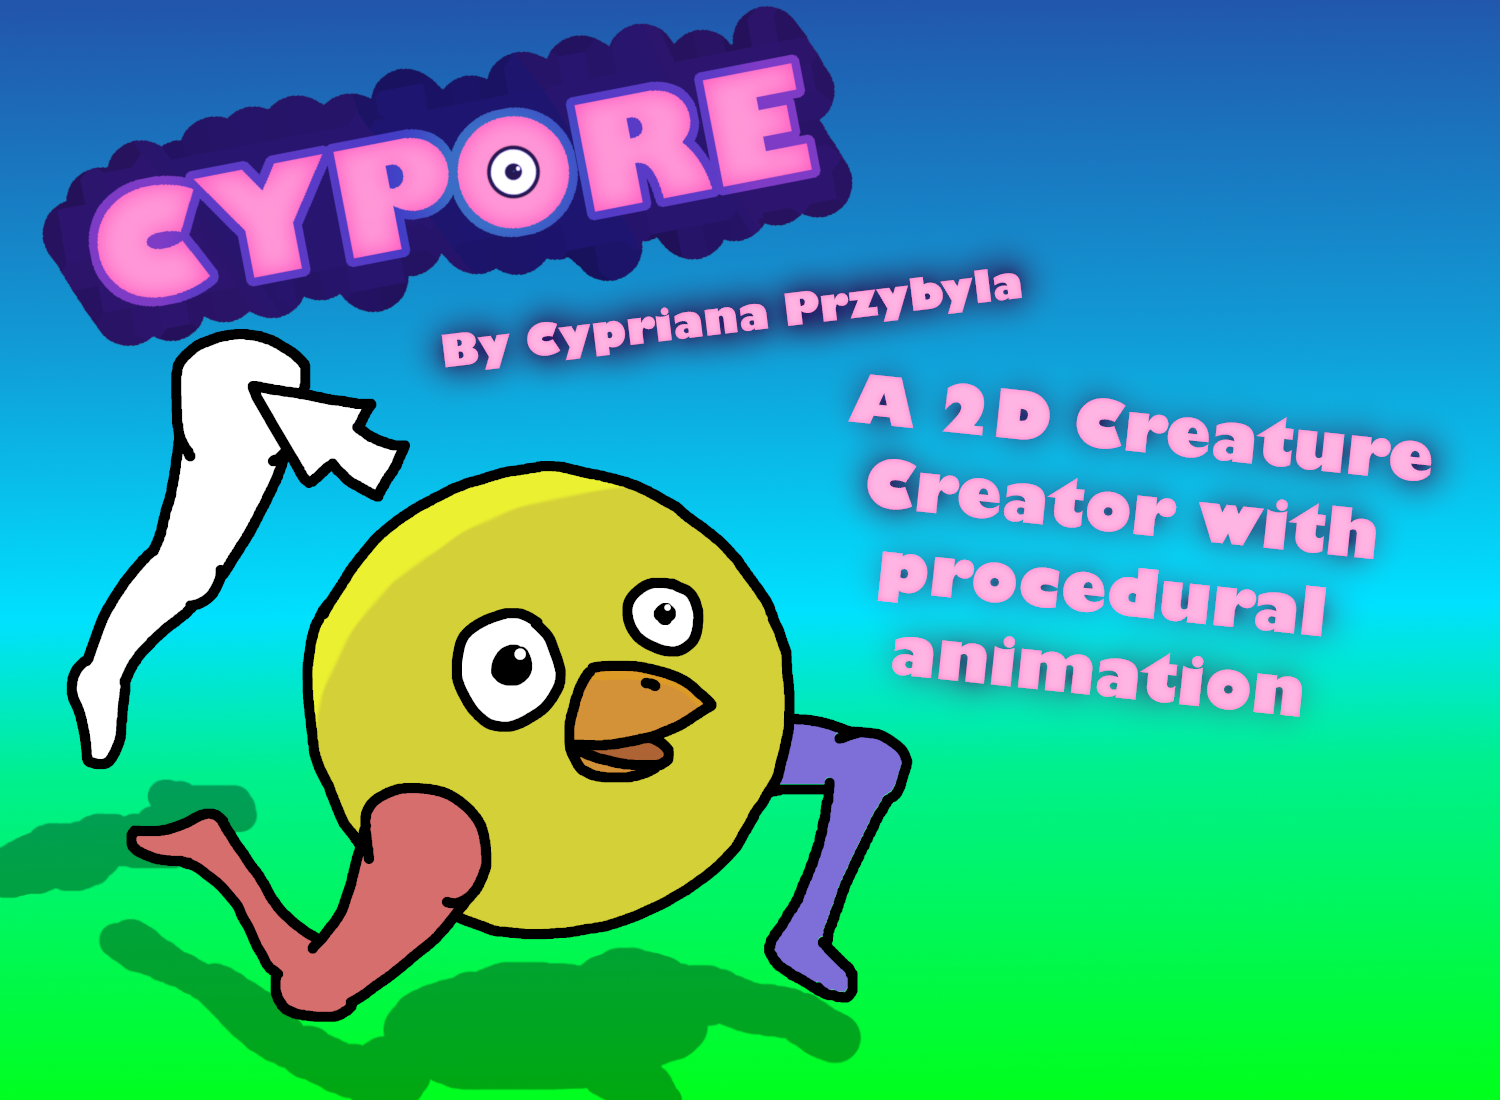 Cypore